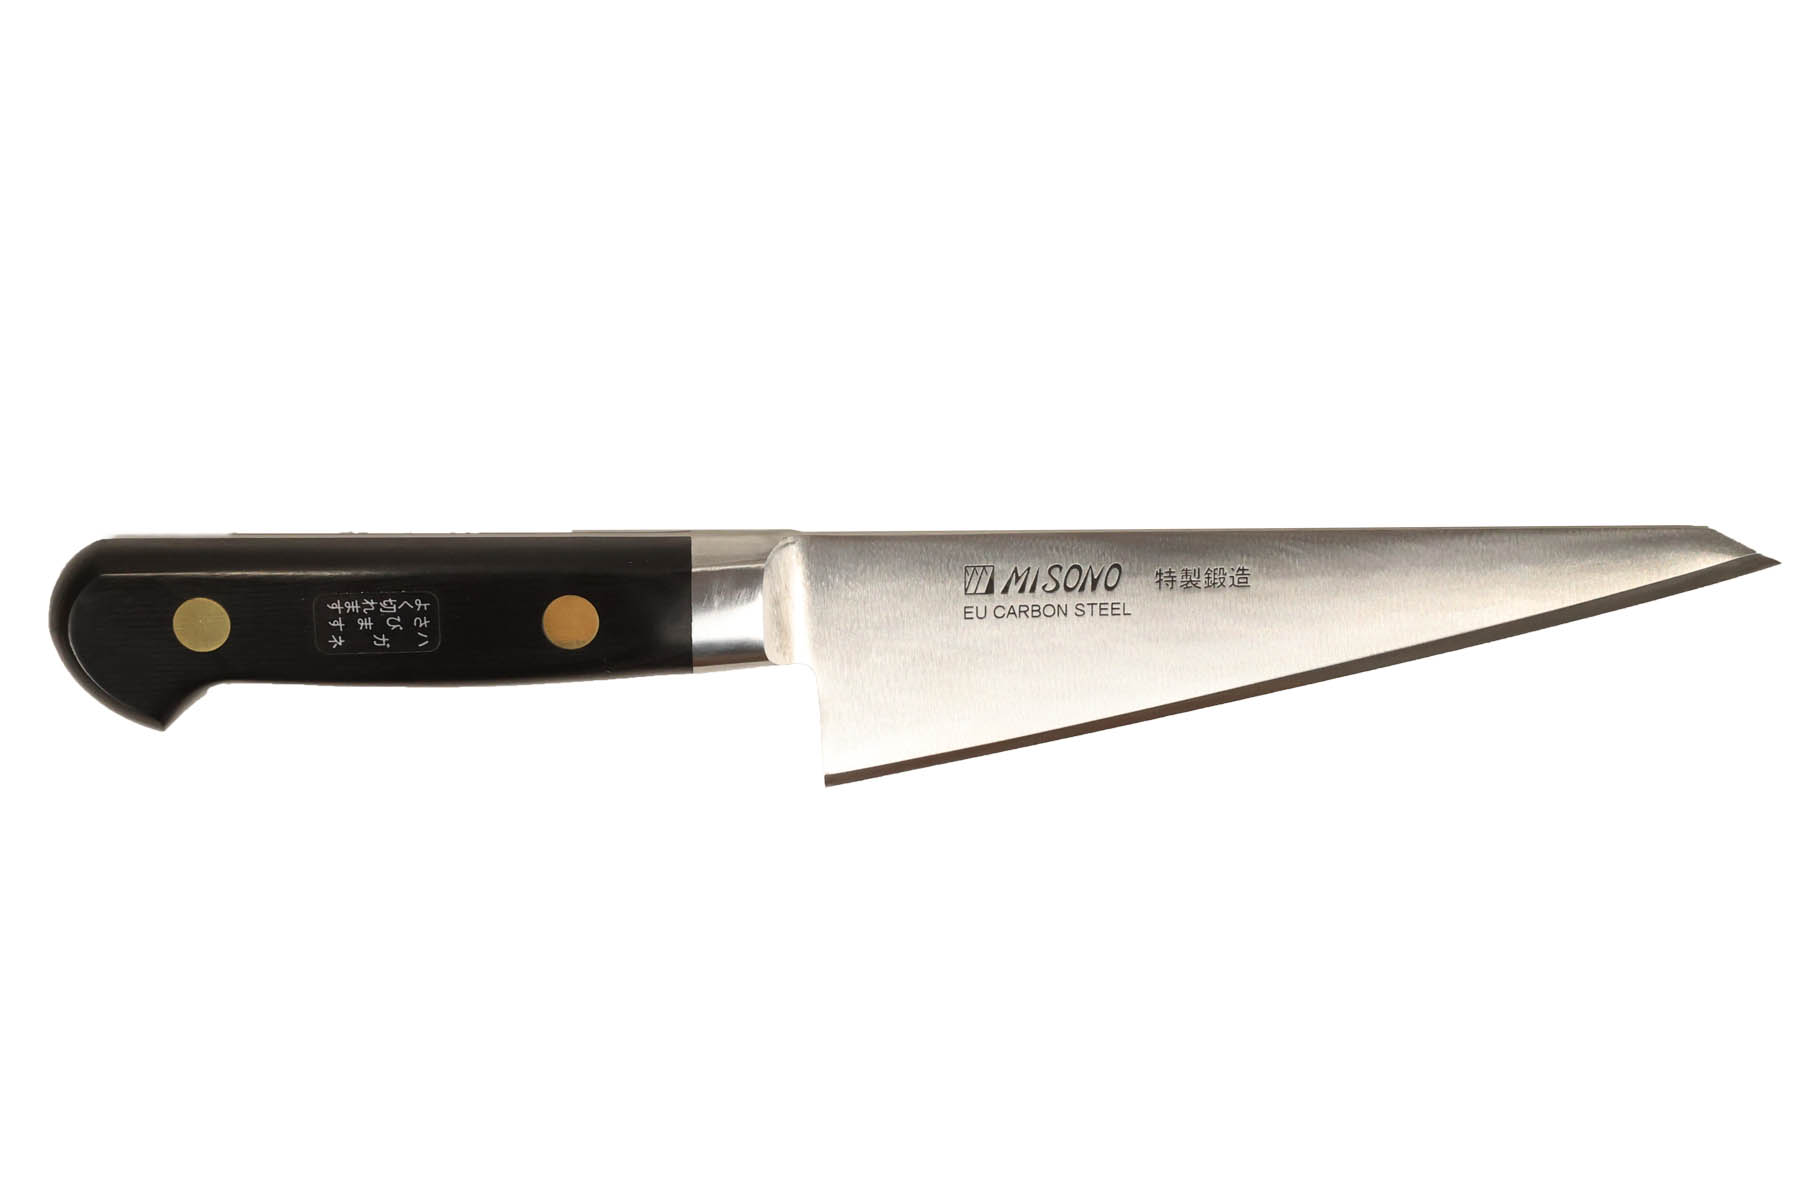 Couteau japonais Misono Swedish Carbon Steel - Couteau honesuki 16,5 cm